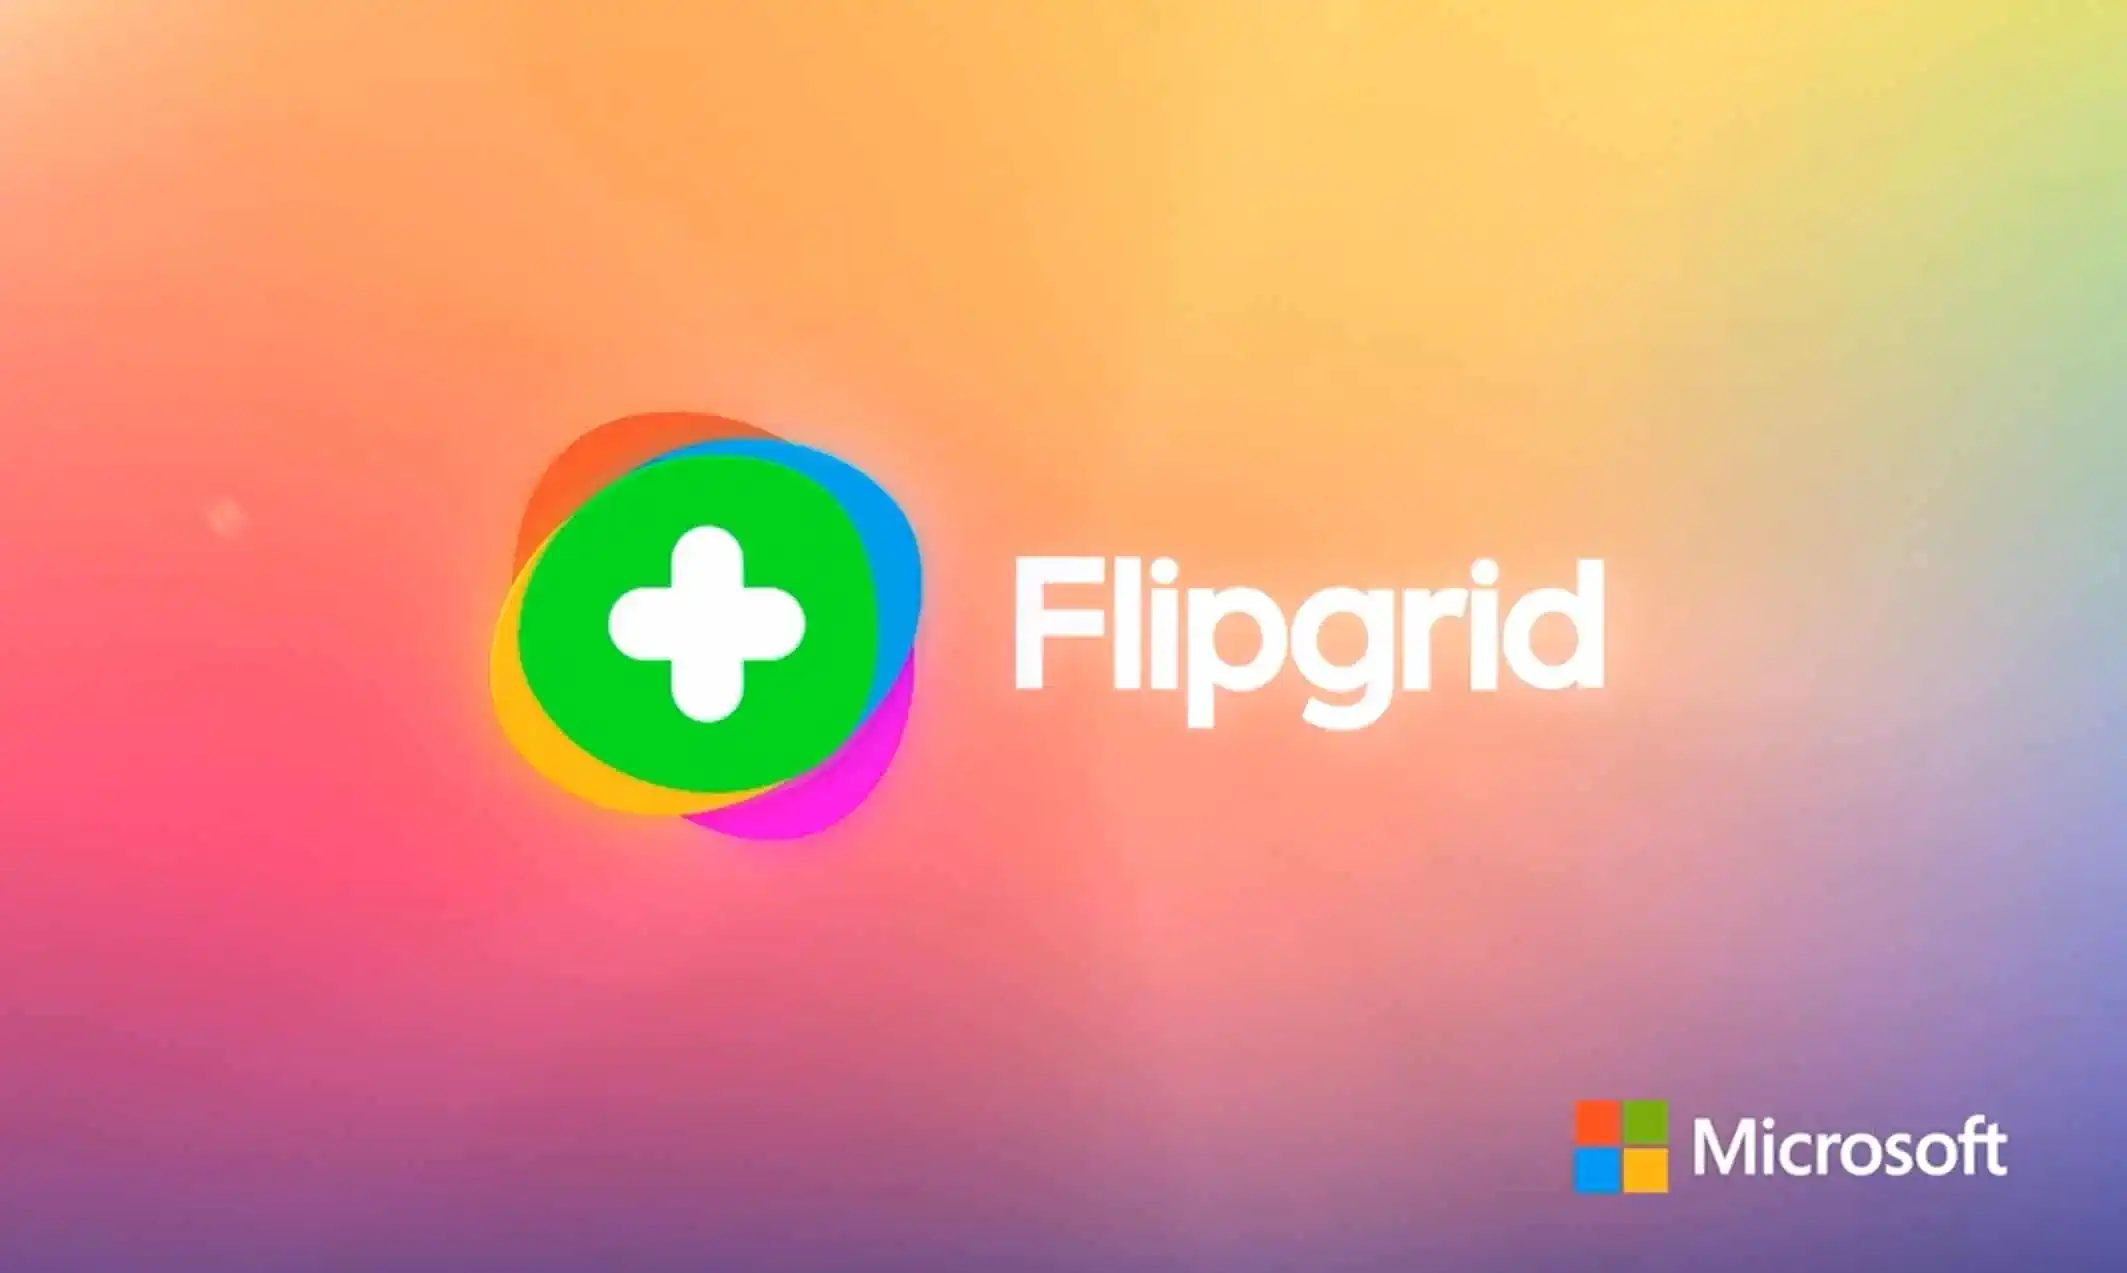 Microsoft Flipgrid